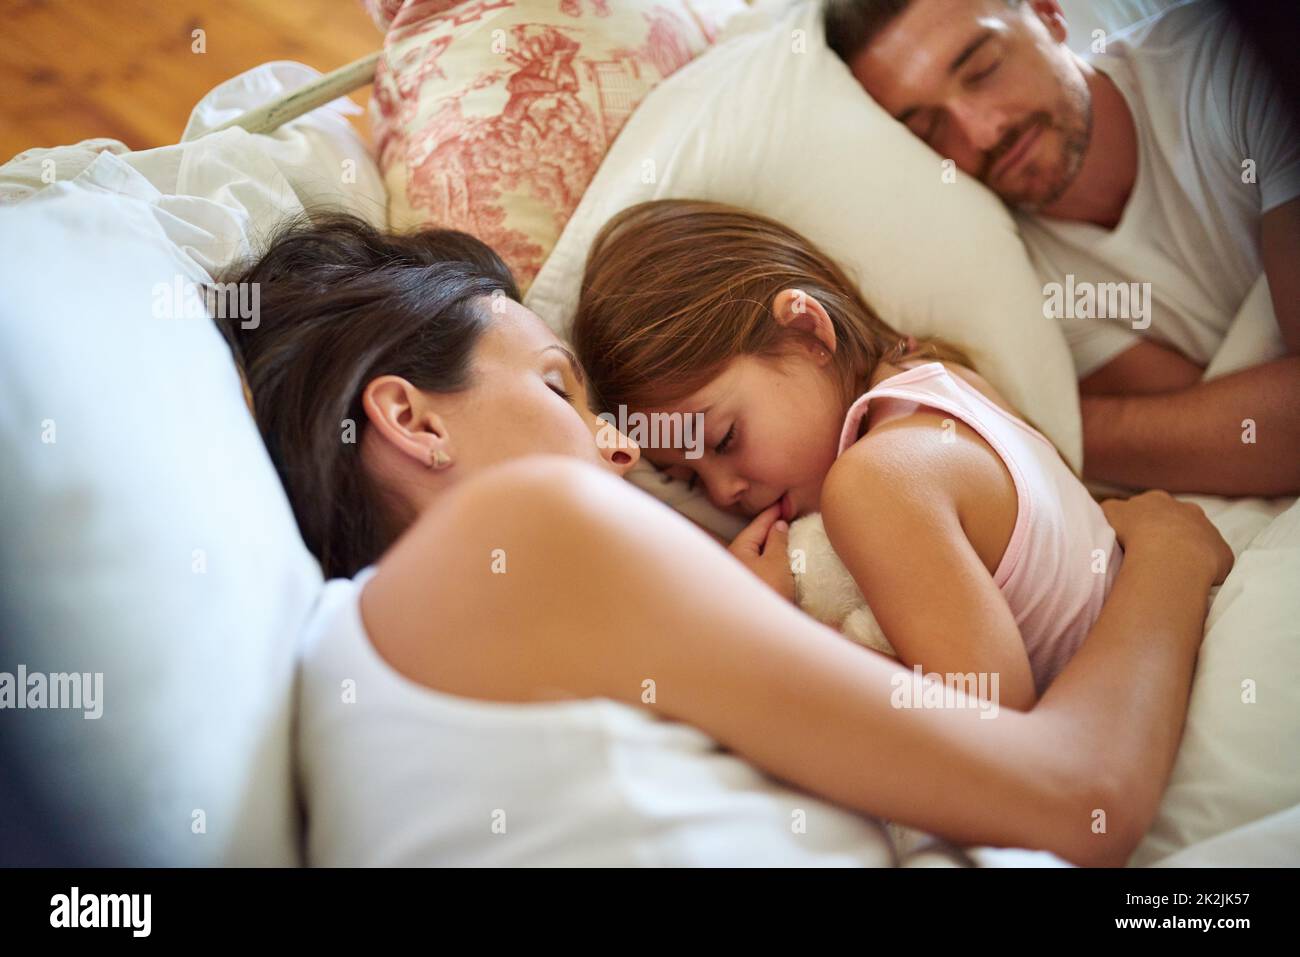 Куни спящей дочери. Нагие дети с родителями. Семья на кровати. Здоровой семейной коалиции в постели с ребенком.